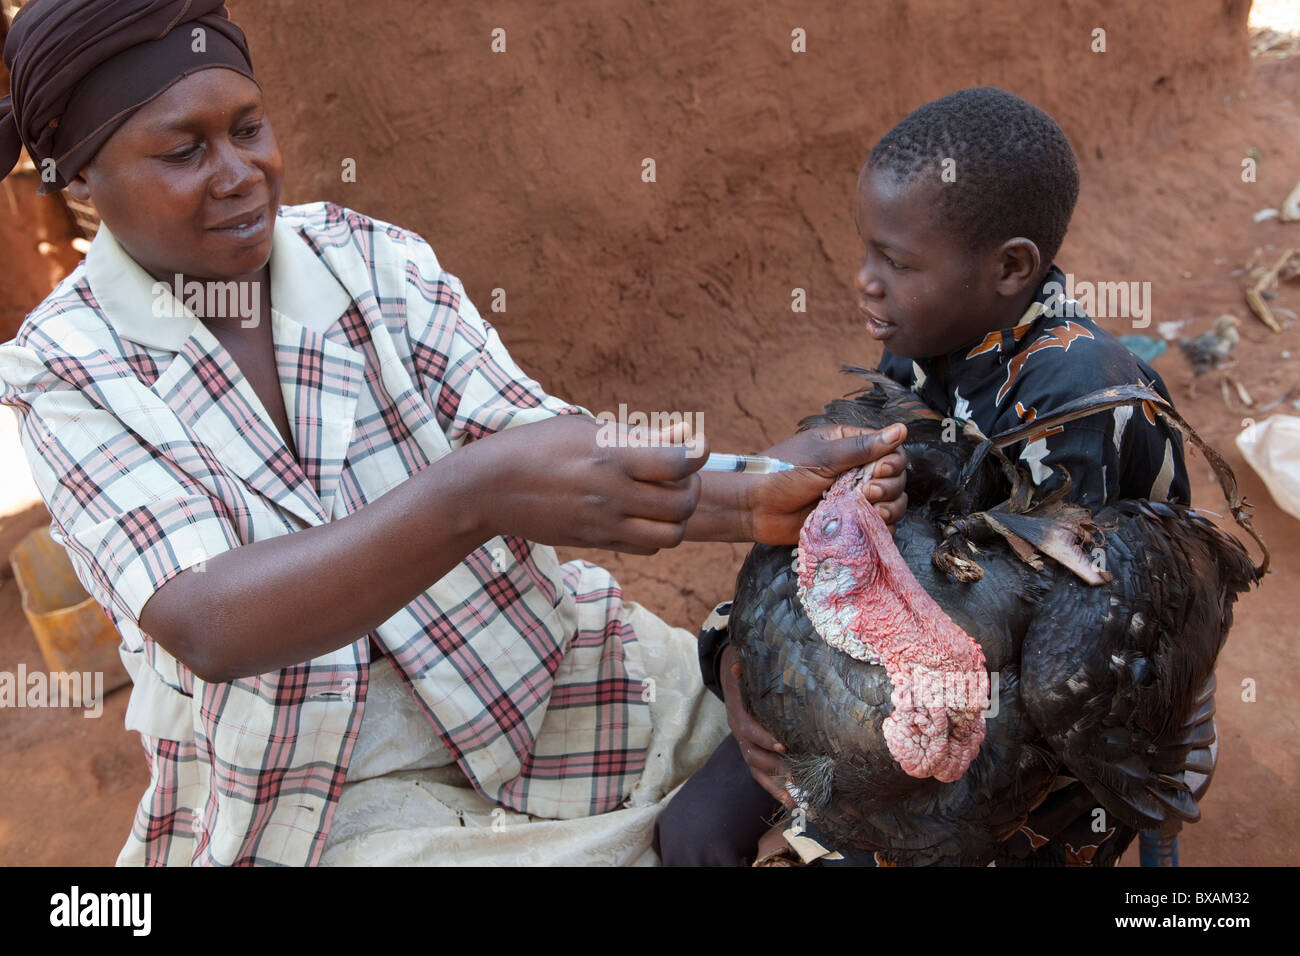 Un garçon apporte son la Turquie d'une journée de vaccination communautaire dans Nampikika, village du district de Iganga, est de l'Ouganda, l'Afrique de l'Est. Banque D'Images